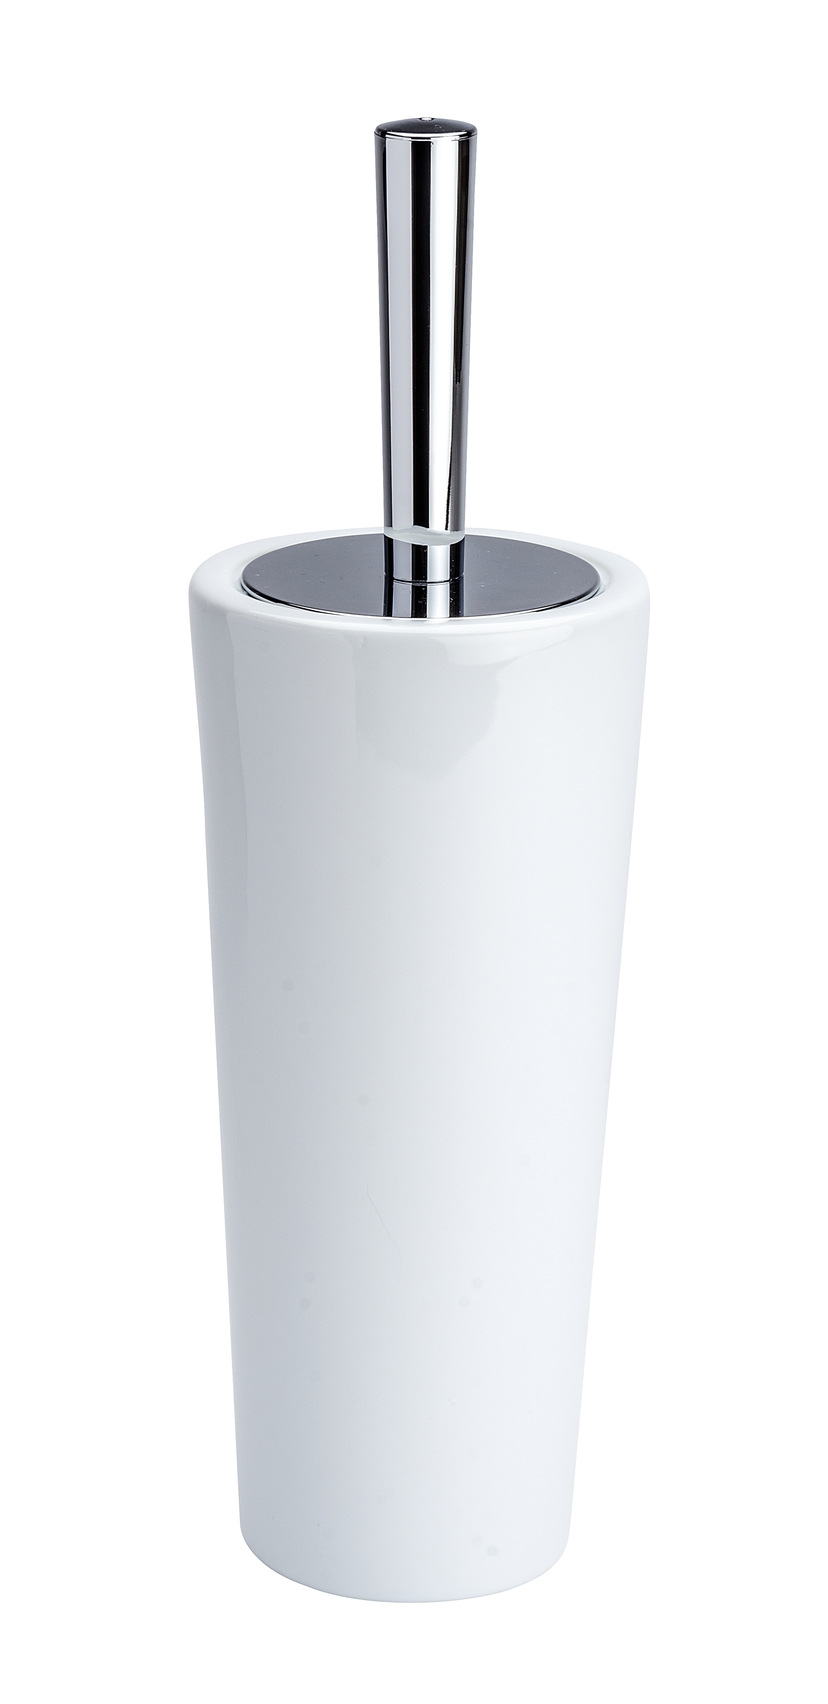 Wenko WC-Garnitur Coni Ø 11,5 x 37 cm, silber glänzend/weiß